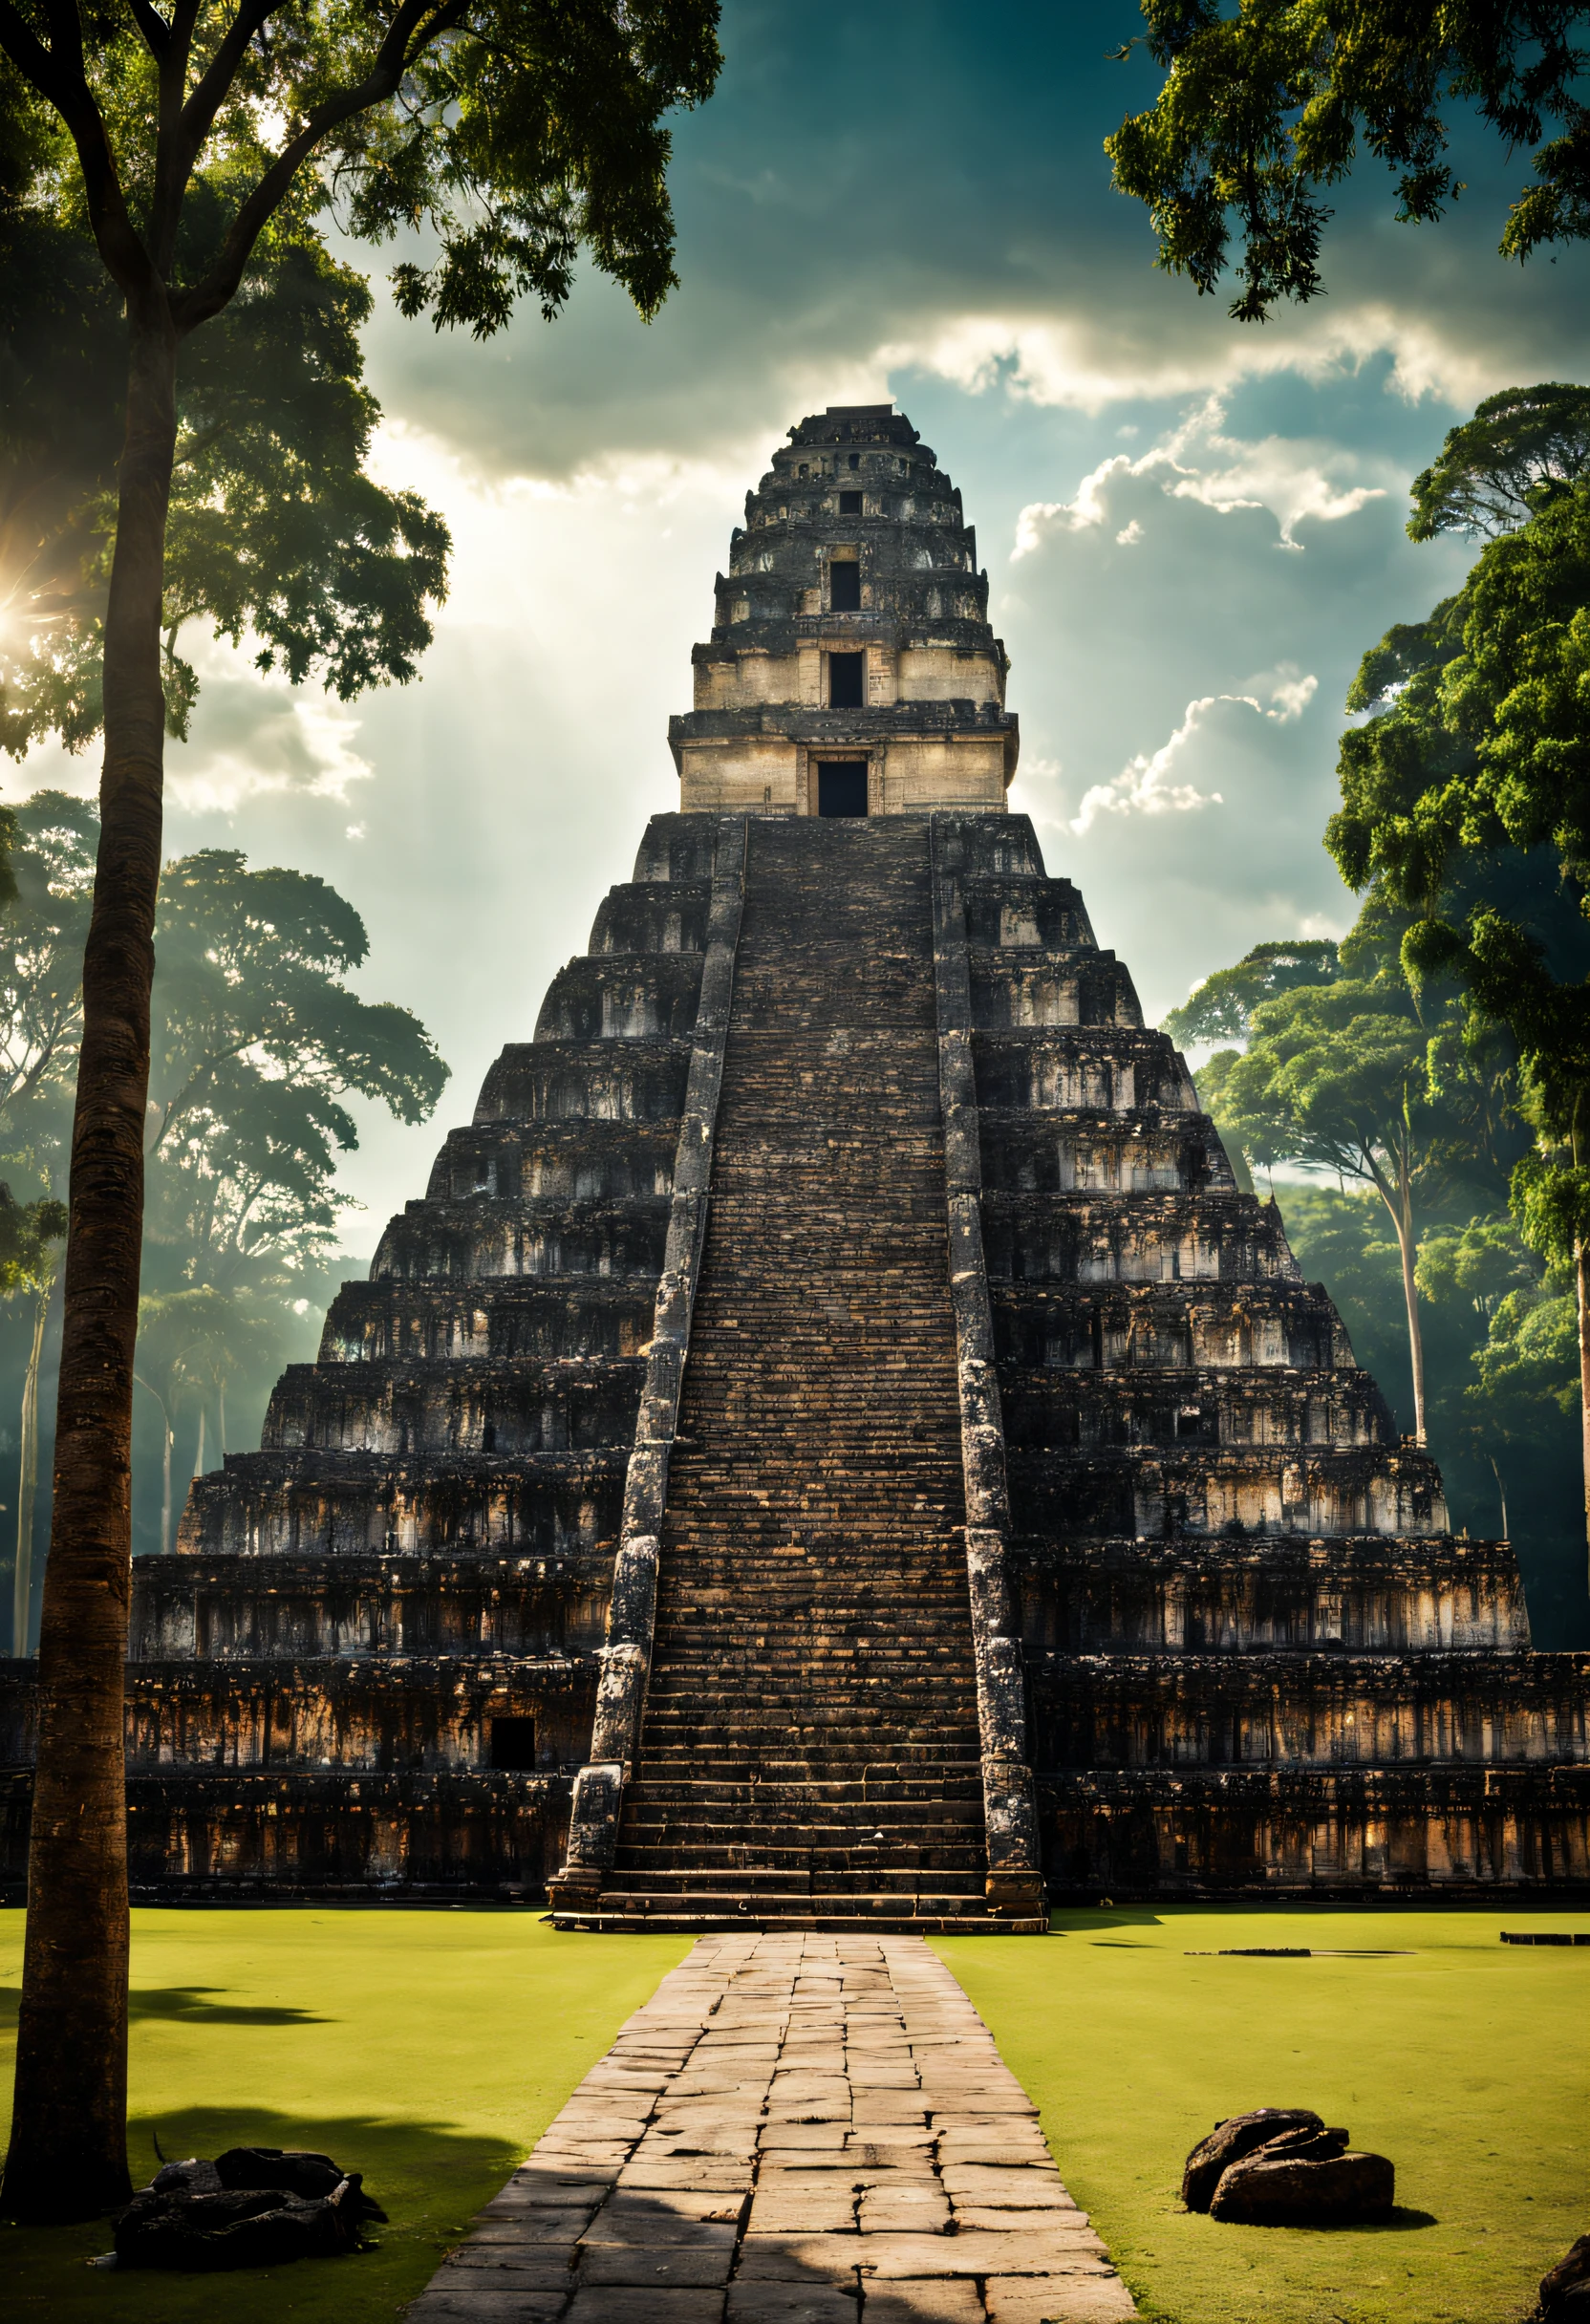 Uma foto épica do Templo da Grande Onça, cinematic, Praça, árvores, floresta, cidade maia, obra de arte, melhor qualidade